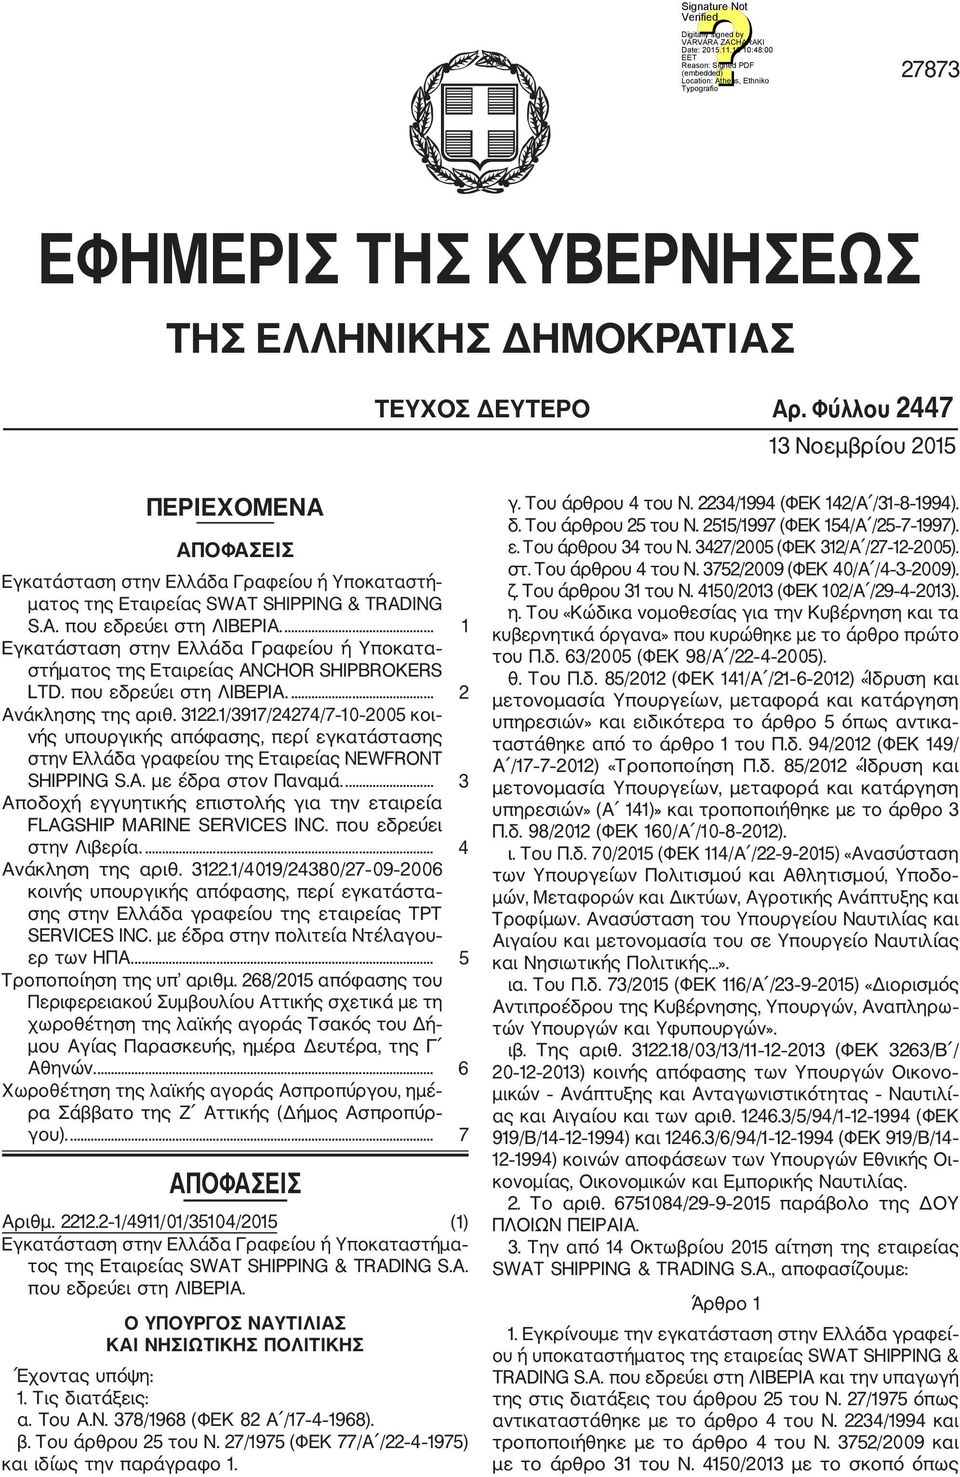 ... 1 Εγκατάσταση στην Ελλάδα Γραφείου ή Υποκατα στήματος της Εταιρείας ANCHOR SHIPBROKERS LTD. που εδρεύει στη ΛΙΒΕΡΙΑ.... 2 Aνάκλησης της αριθ. 3122.